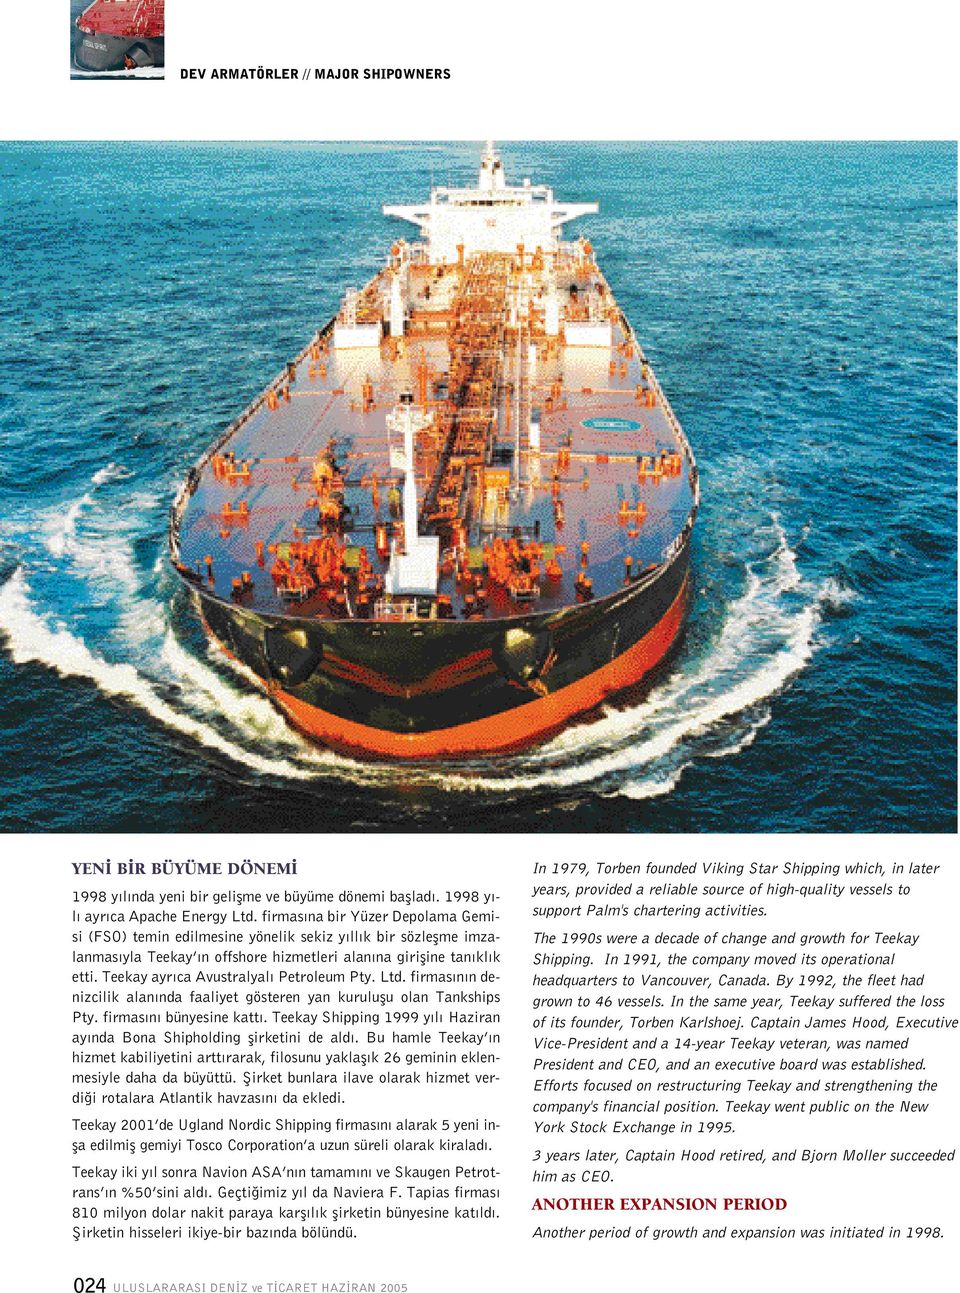 Teekay ayr ca Avustralyal Petroleum Pty. Ltd. firmas n n denizcilik alan nda faaliyet gösteren yan kuruluflu olan Tankships Pty. firmas n bünyesine katt.